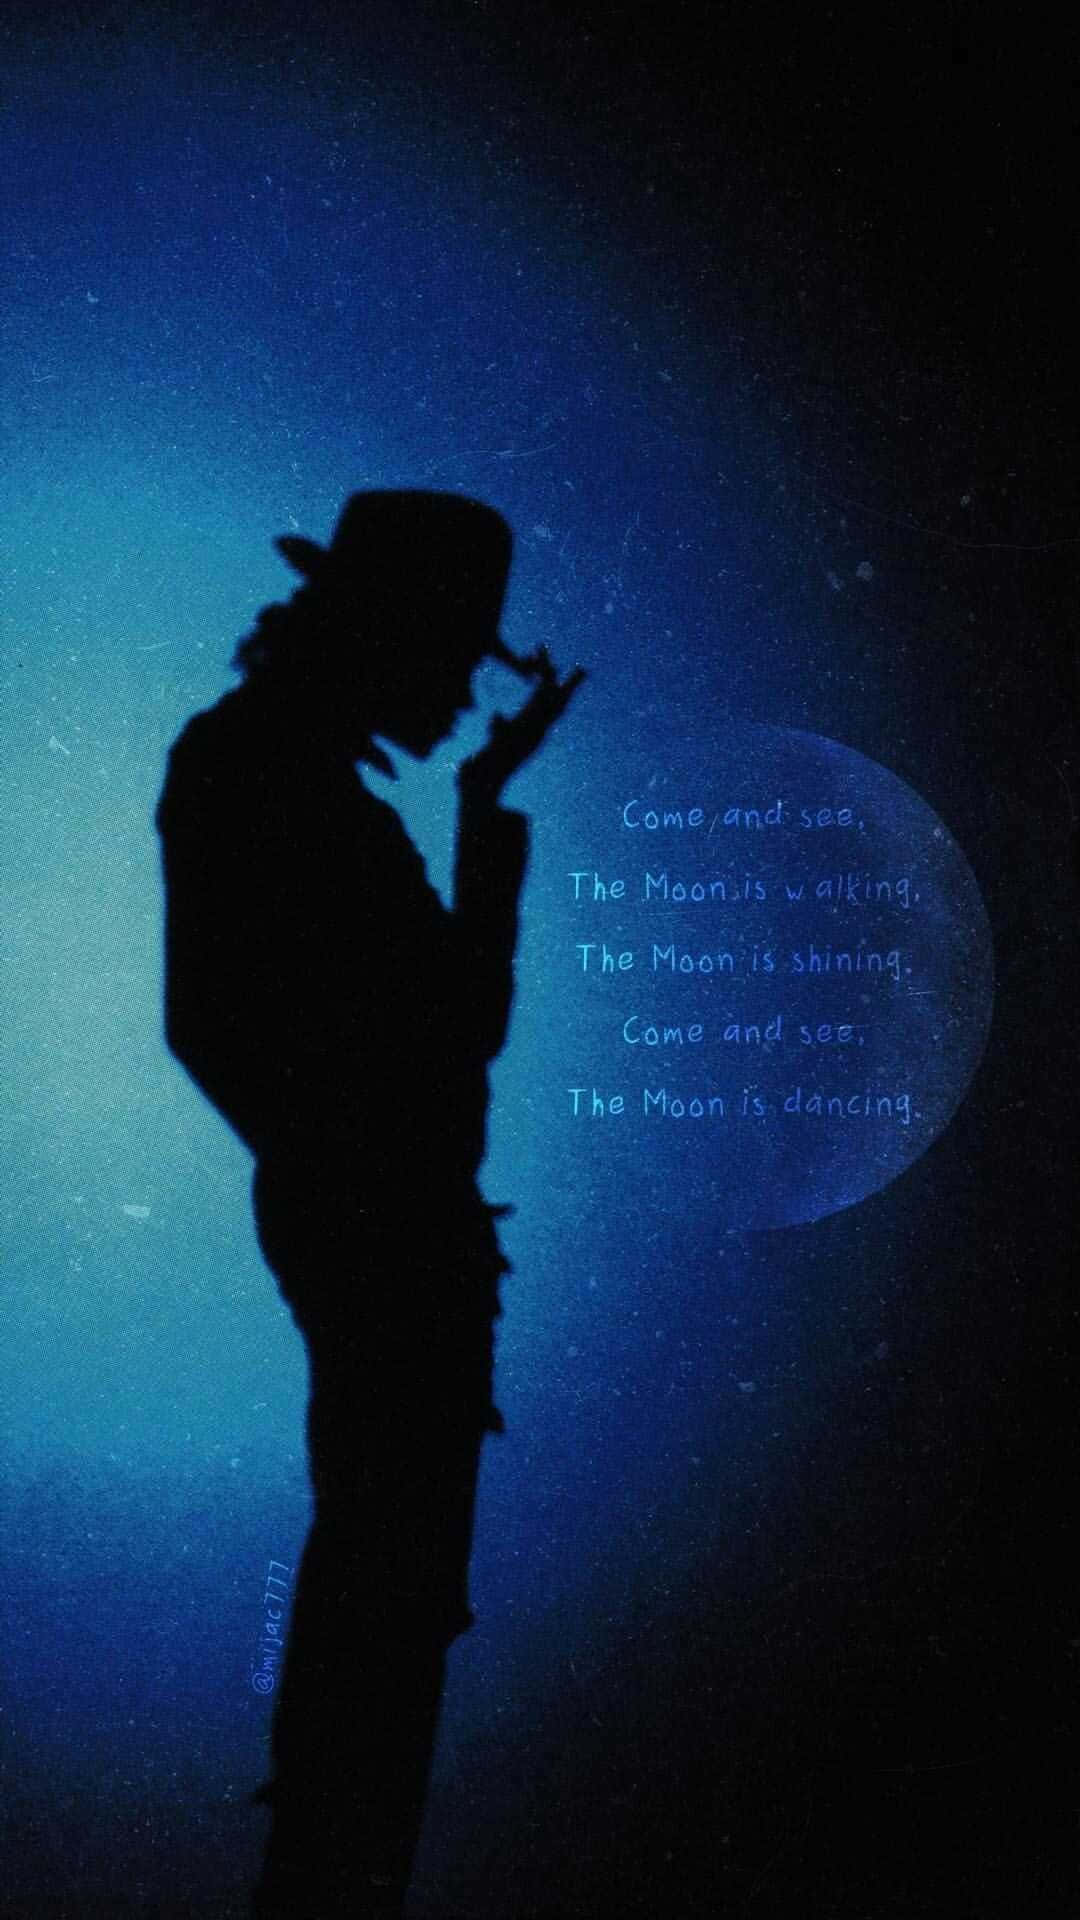 47+] Michael Jackson Live Wallpaper - WallpaperSafari